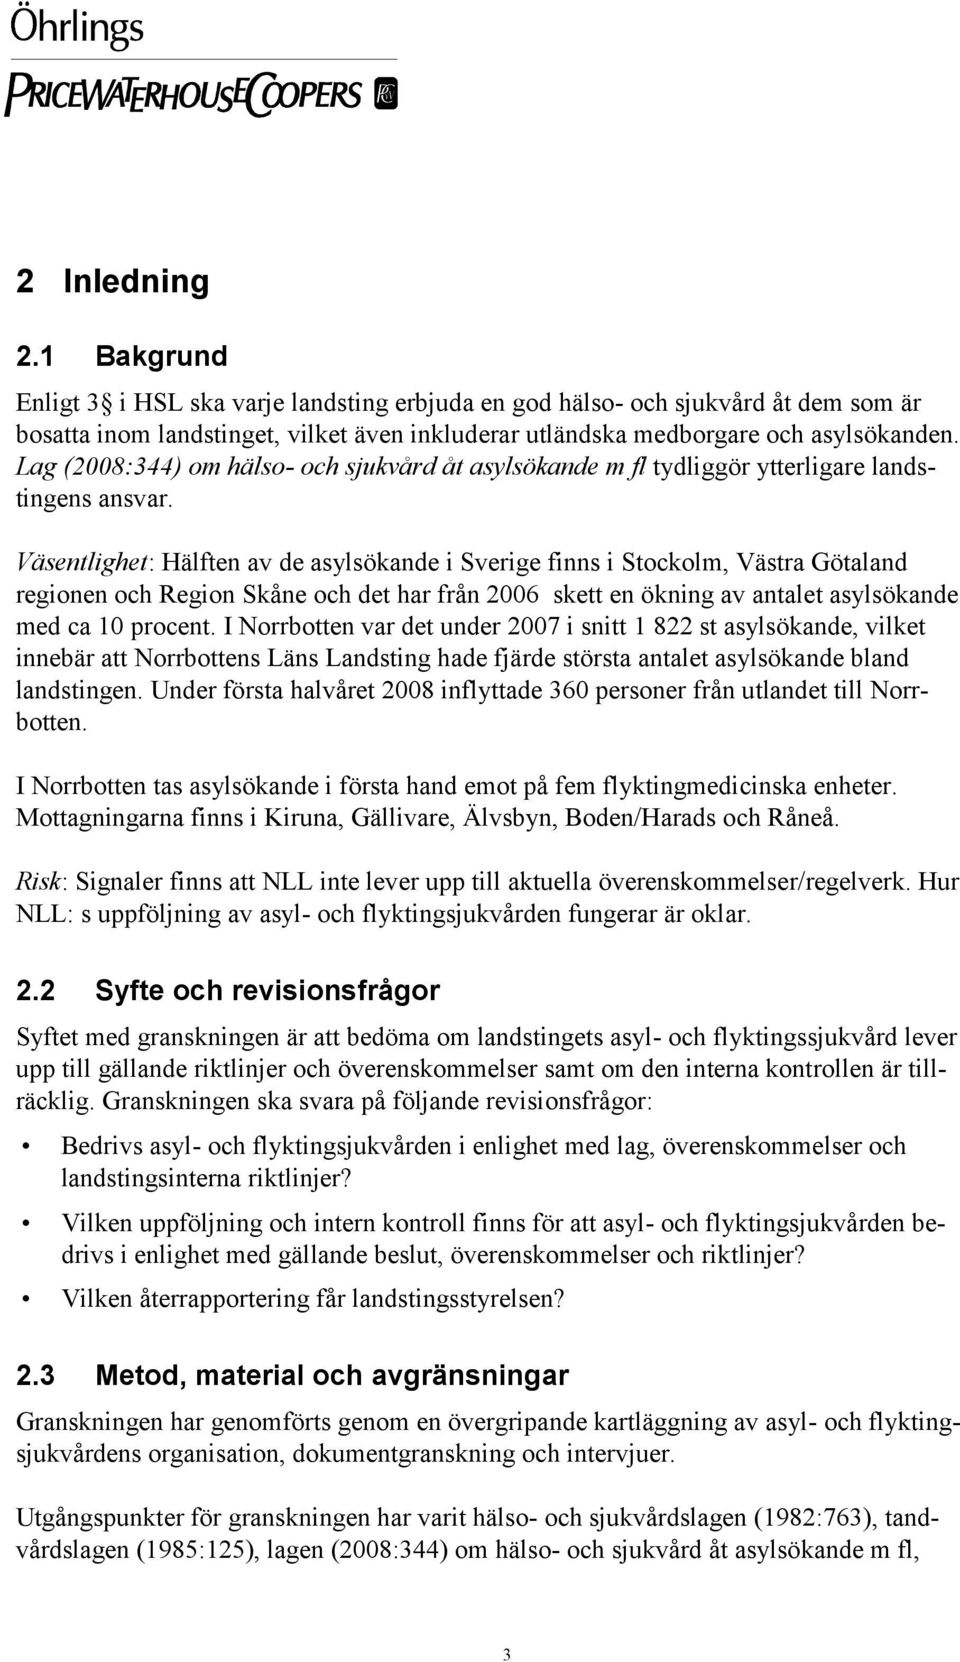 Väsentlighet: Hälften av de asylsökande i Sverige finns i Stockolm, Västra Götaland regionen och Region Skåne och det har från 2006 skett en ökning av antalet asylsökande med ca 10 procent.